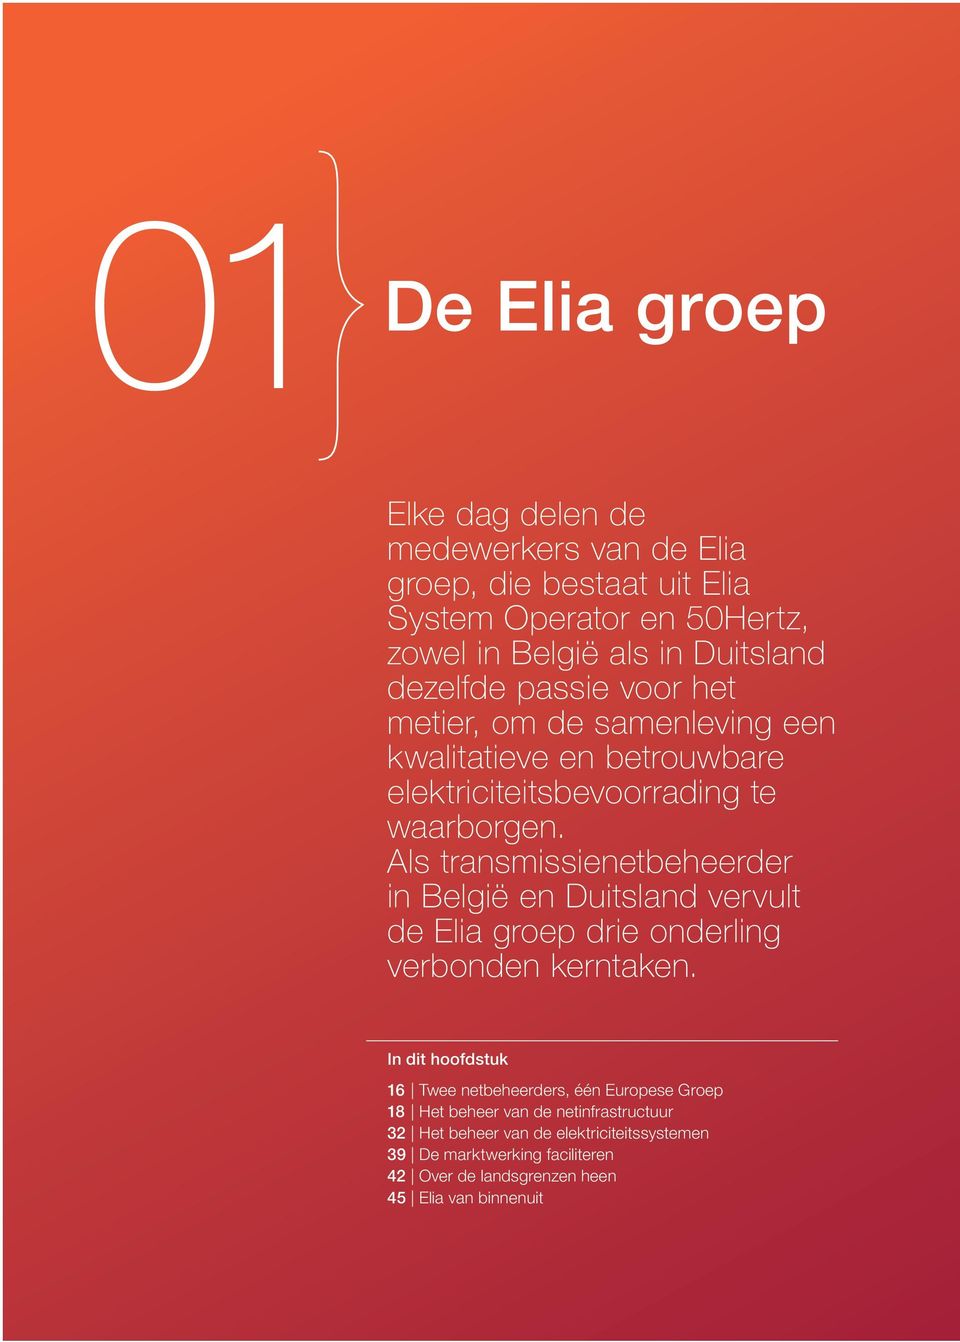 Als transmissienetbeheerder in België en Duitsland vervult de Elia groep drie onderling verbonden kerntaken.